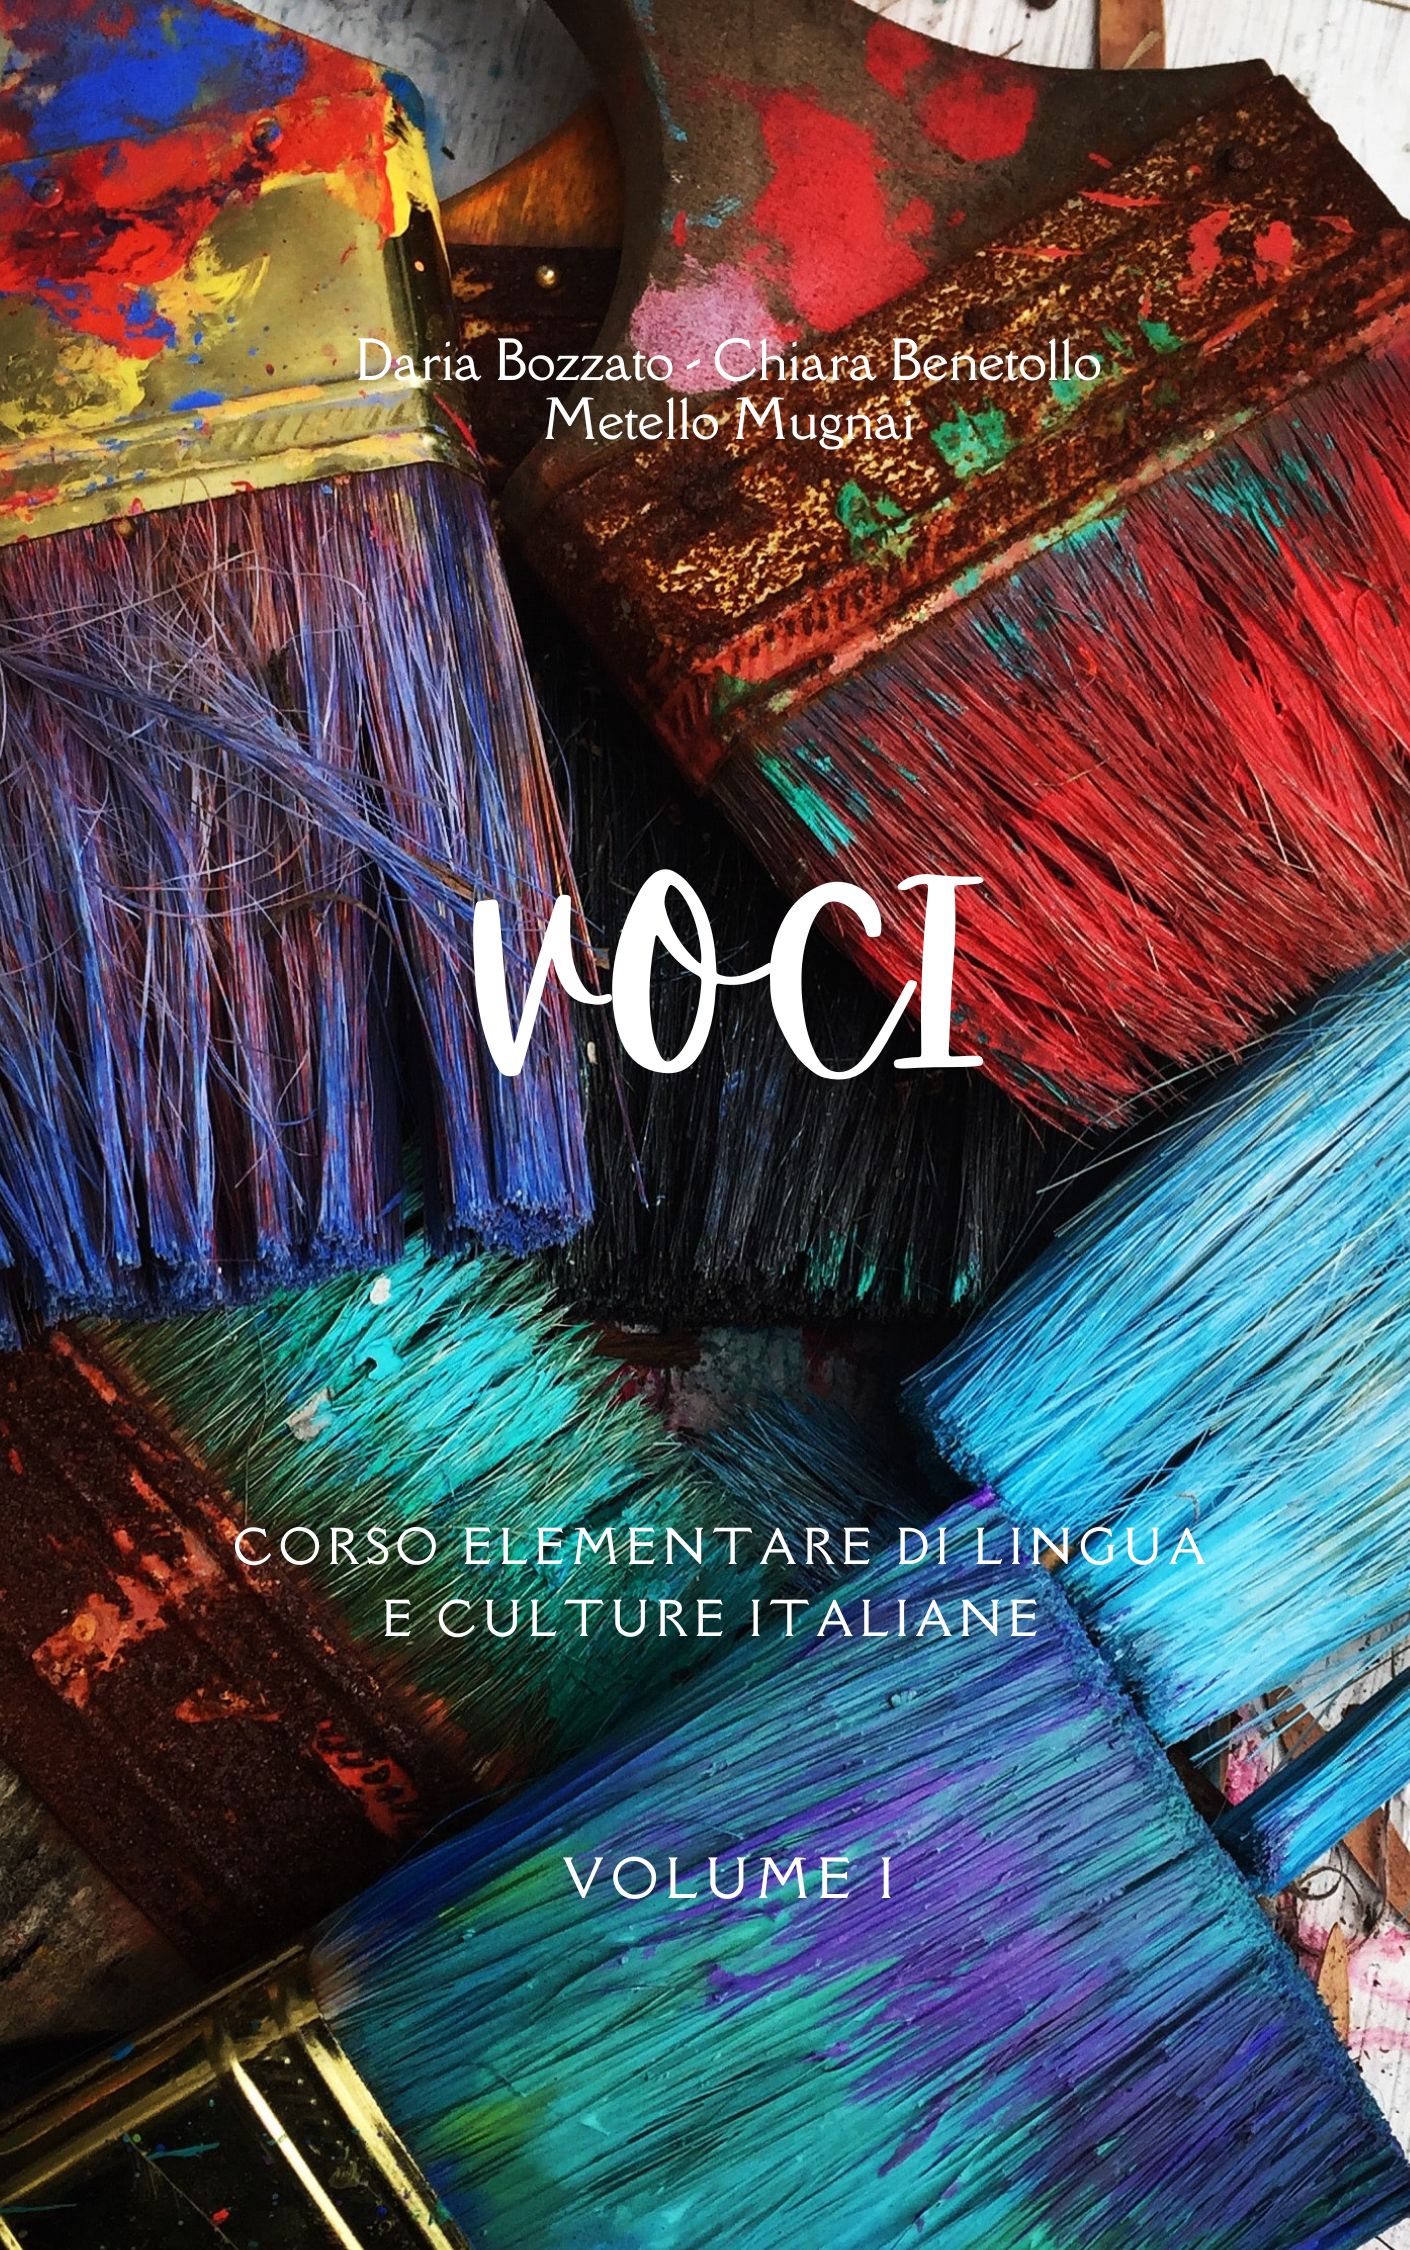 Cover image for Voci: Corso elementare di lingua e culture italiane - Volume I